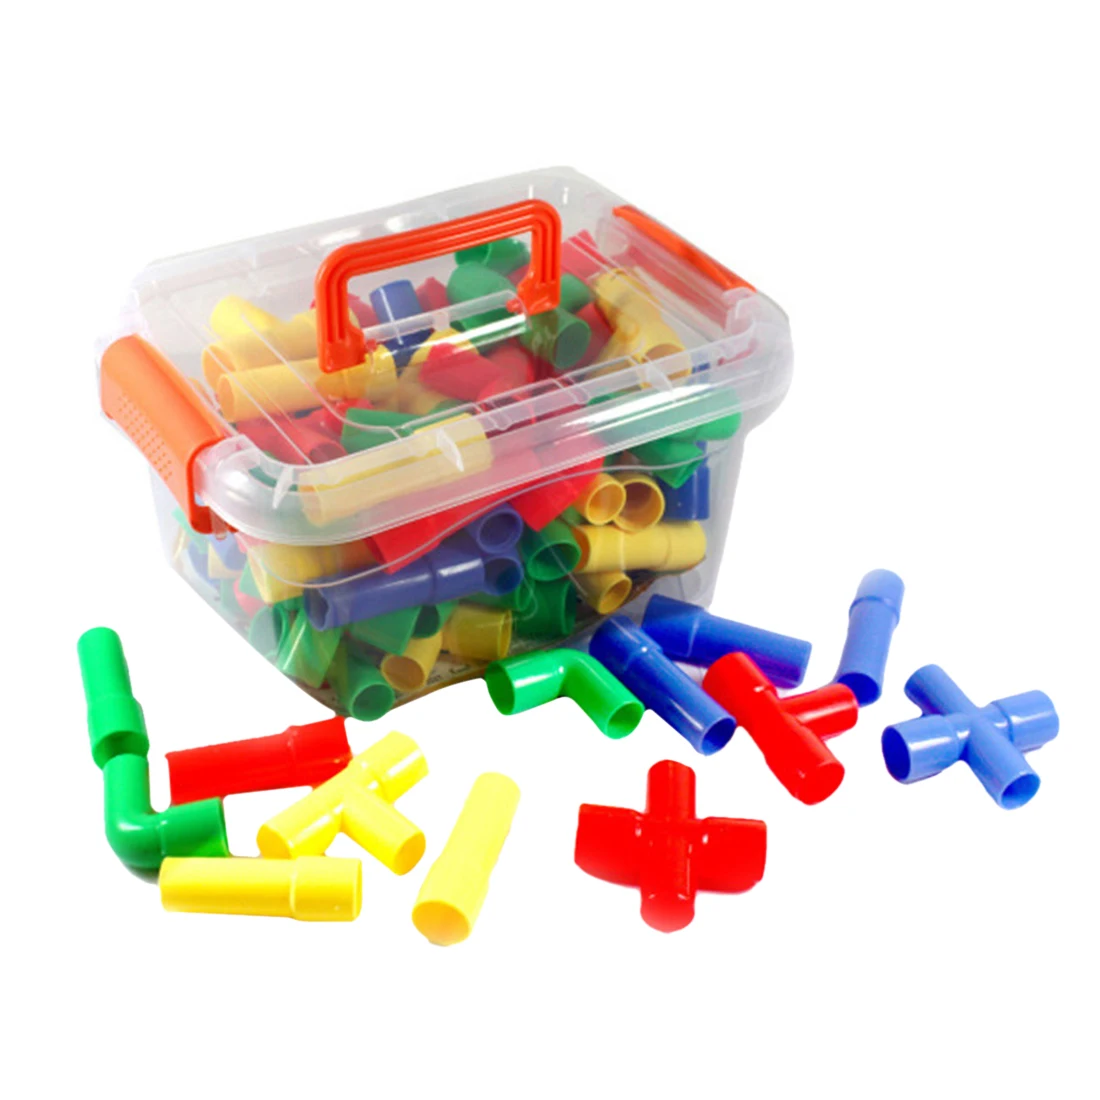 40 шт. трубостроение блокирует Обучение игрушки для детей с 4 колесами игрушки для детей воображение развивающие наборы